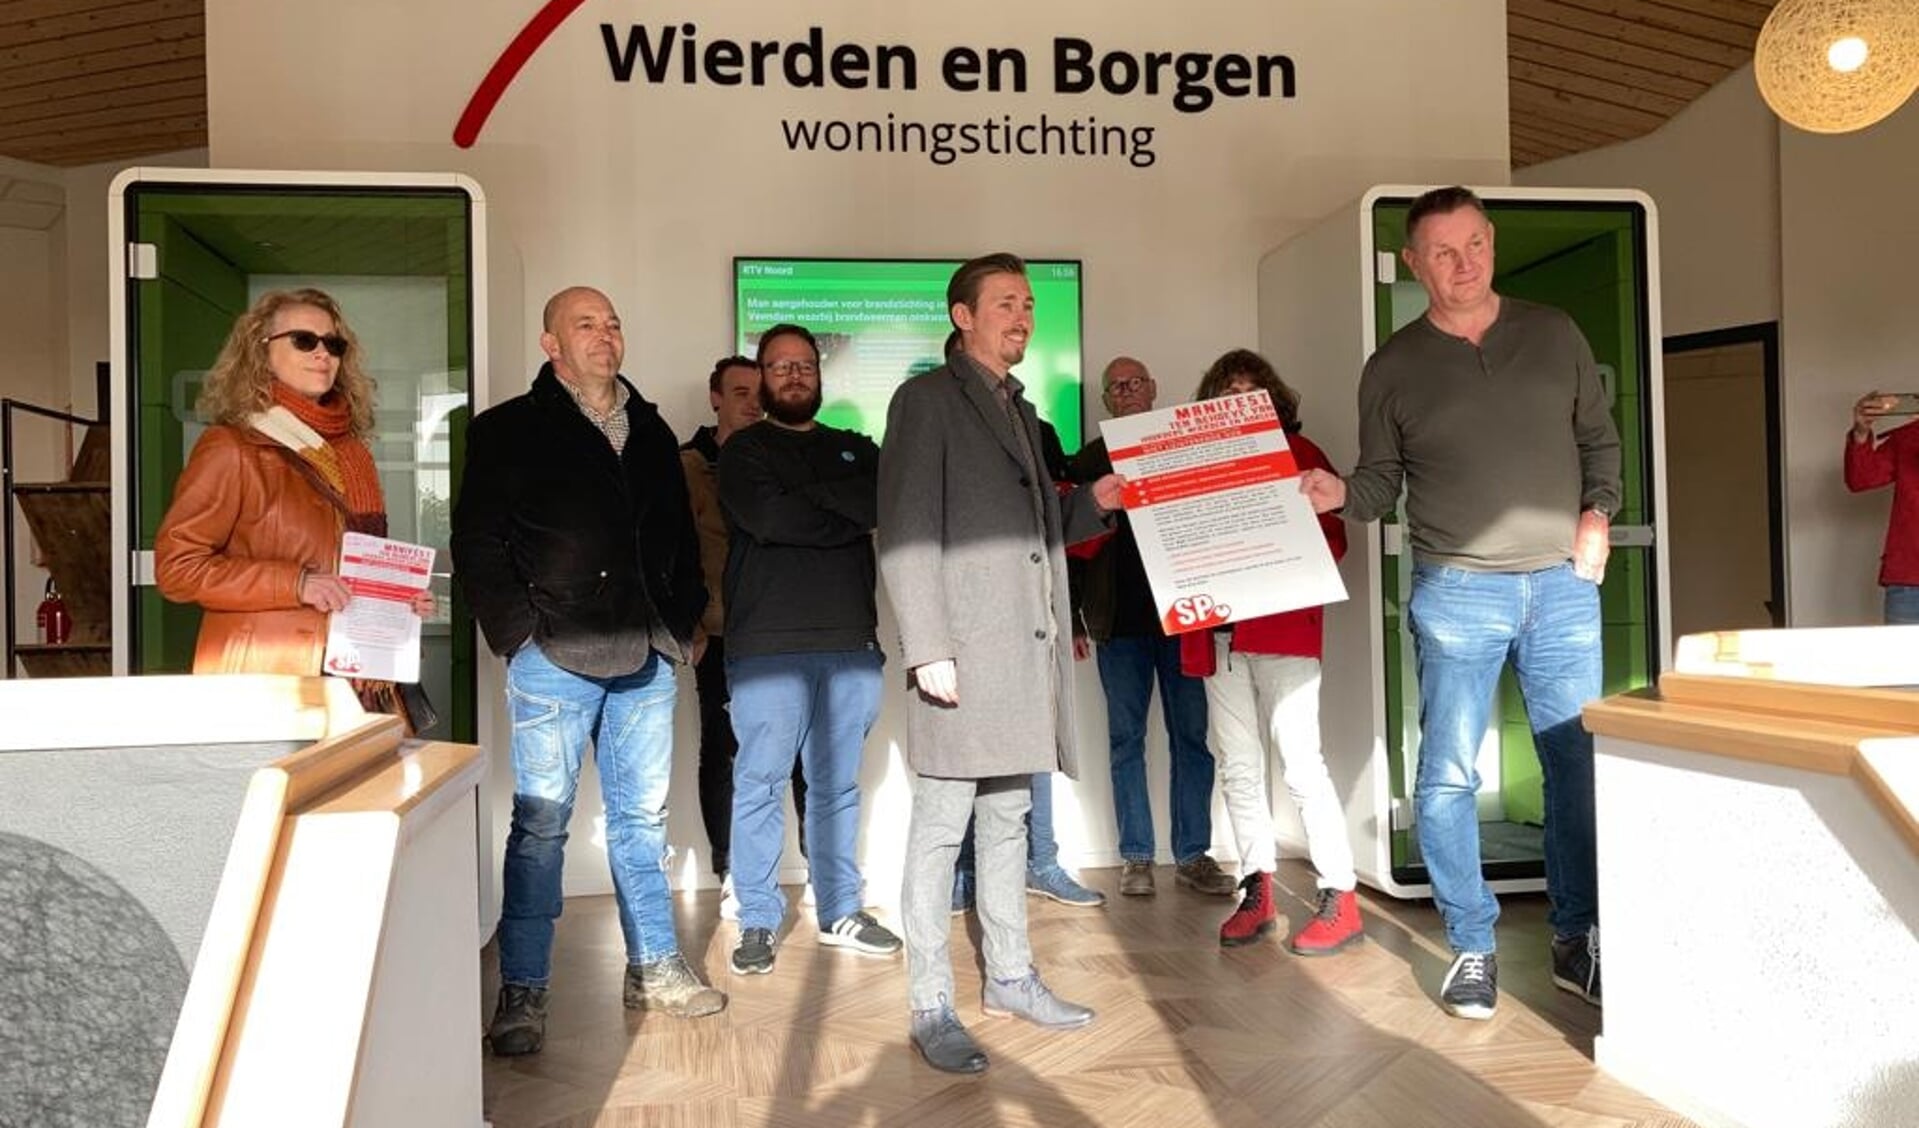 De aanbieding van het manifest bij Wierden en Borgen (foto SP Het Hogeland).